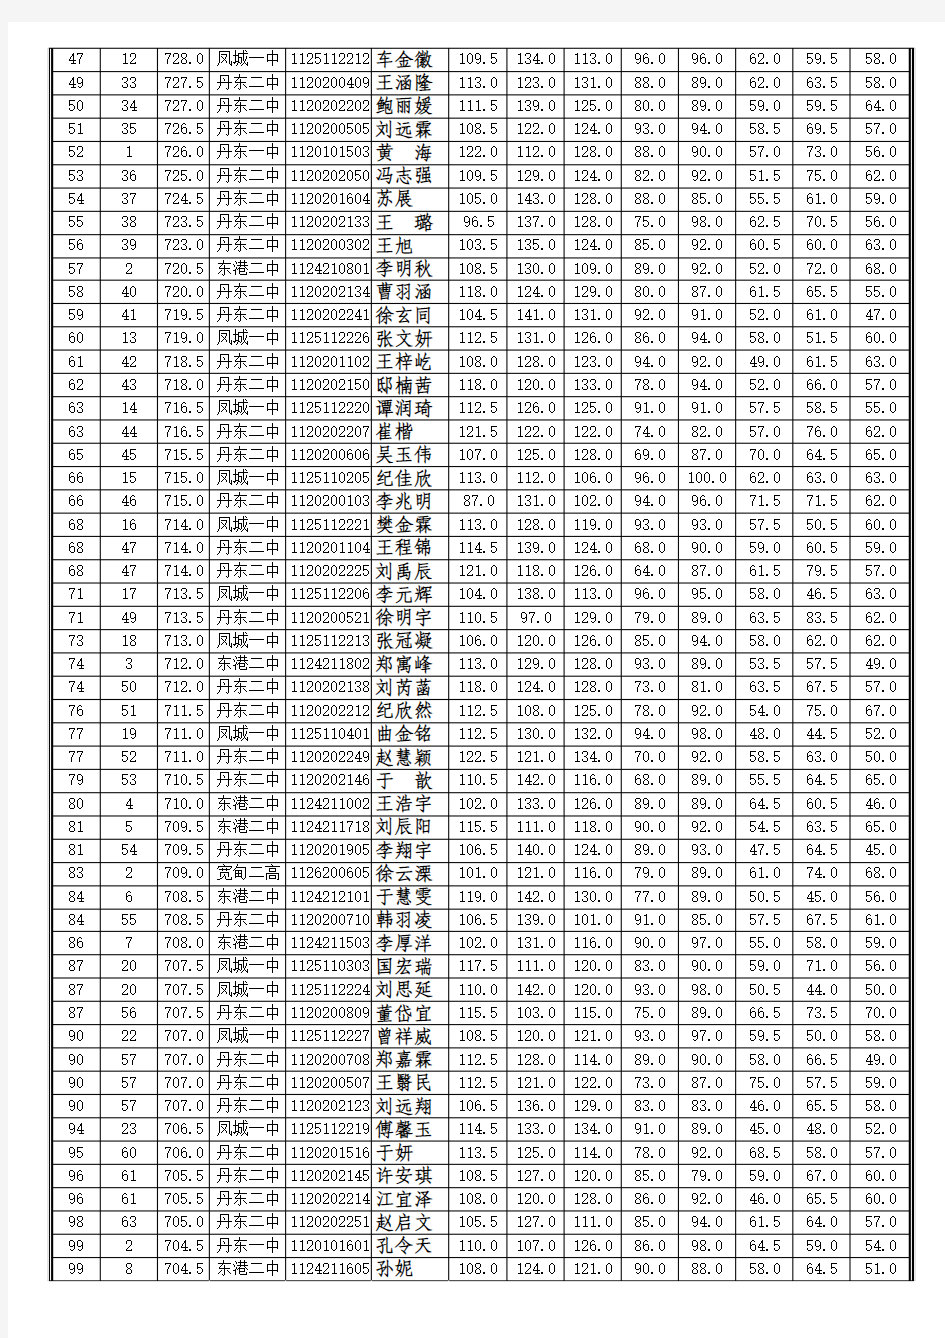 2012~2013(下)丹东市高一期末统考成绩数据